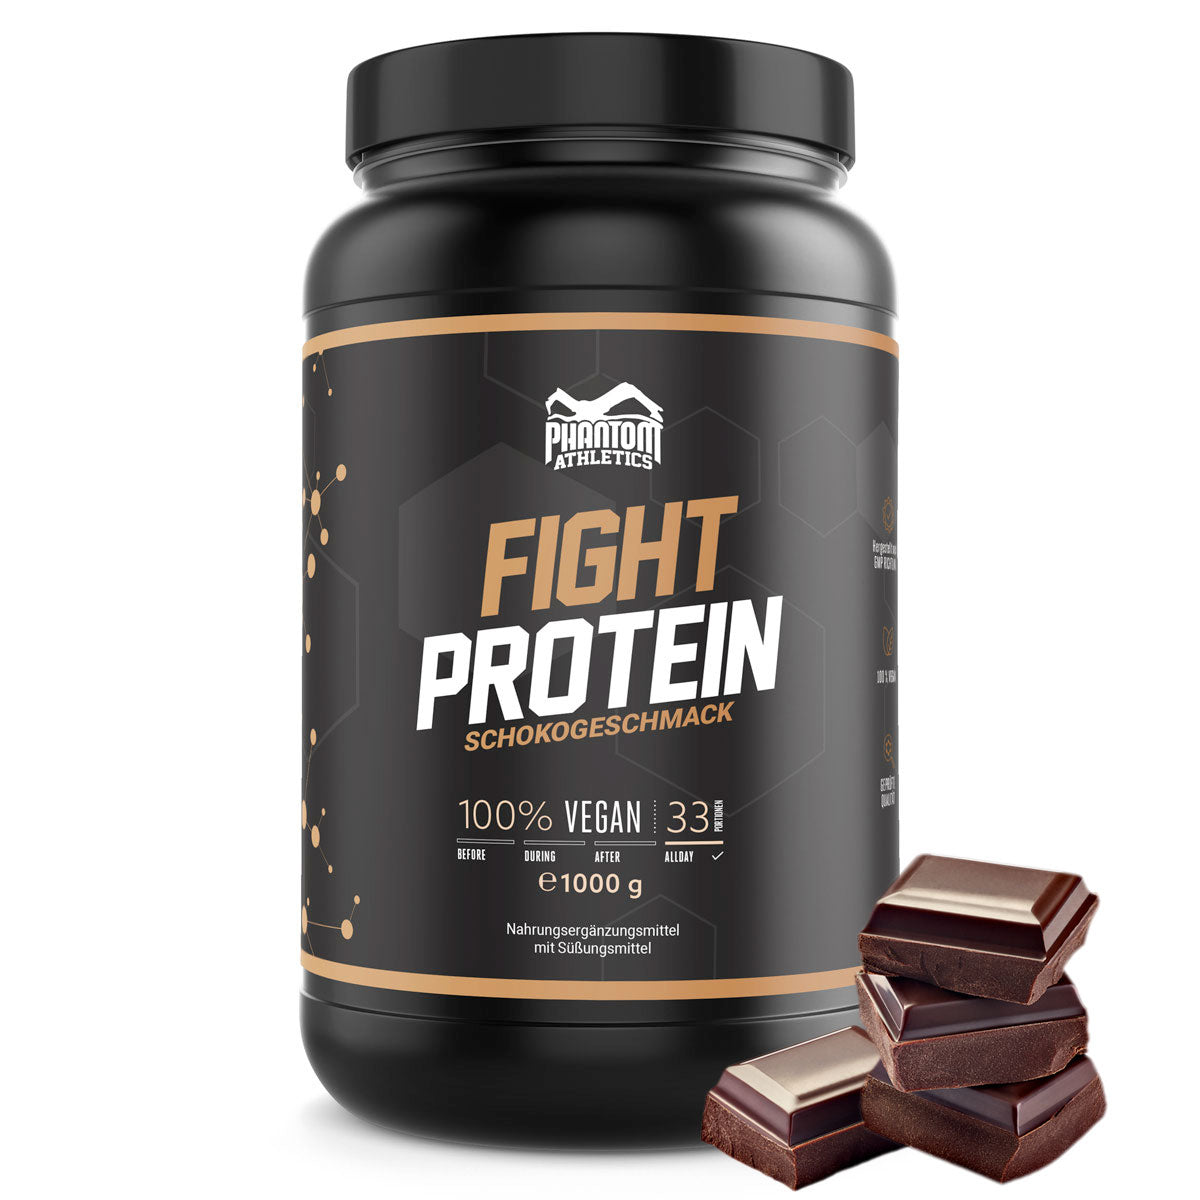 Phantom FIGHT Protein für Kampfsportler mit leckerem Schokogeschmack.